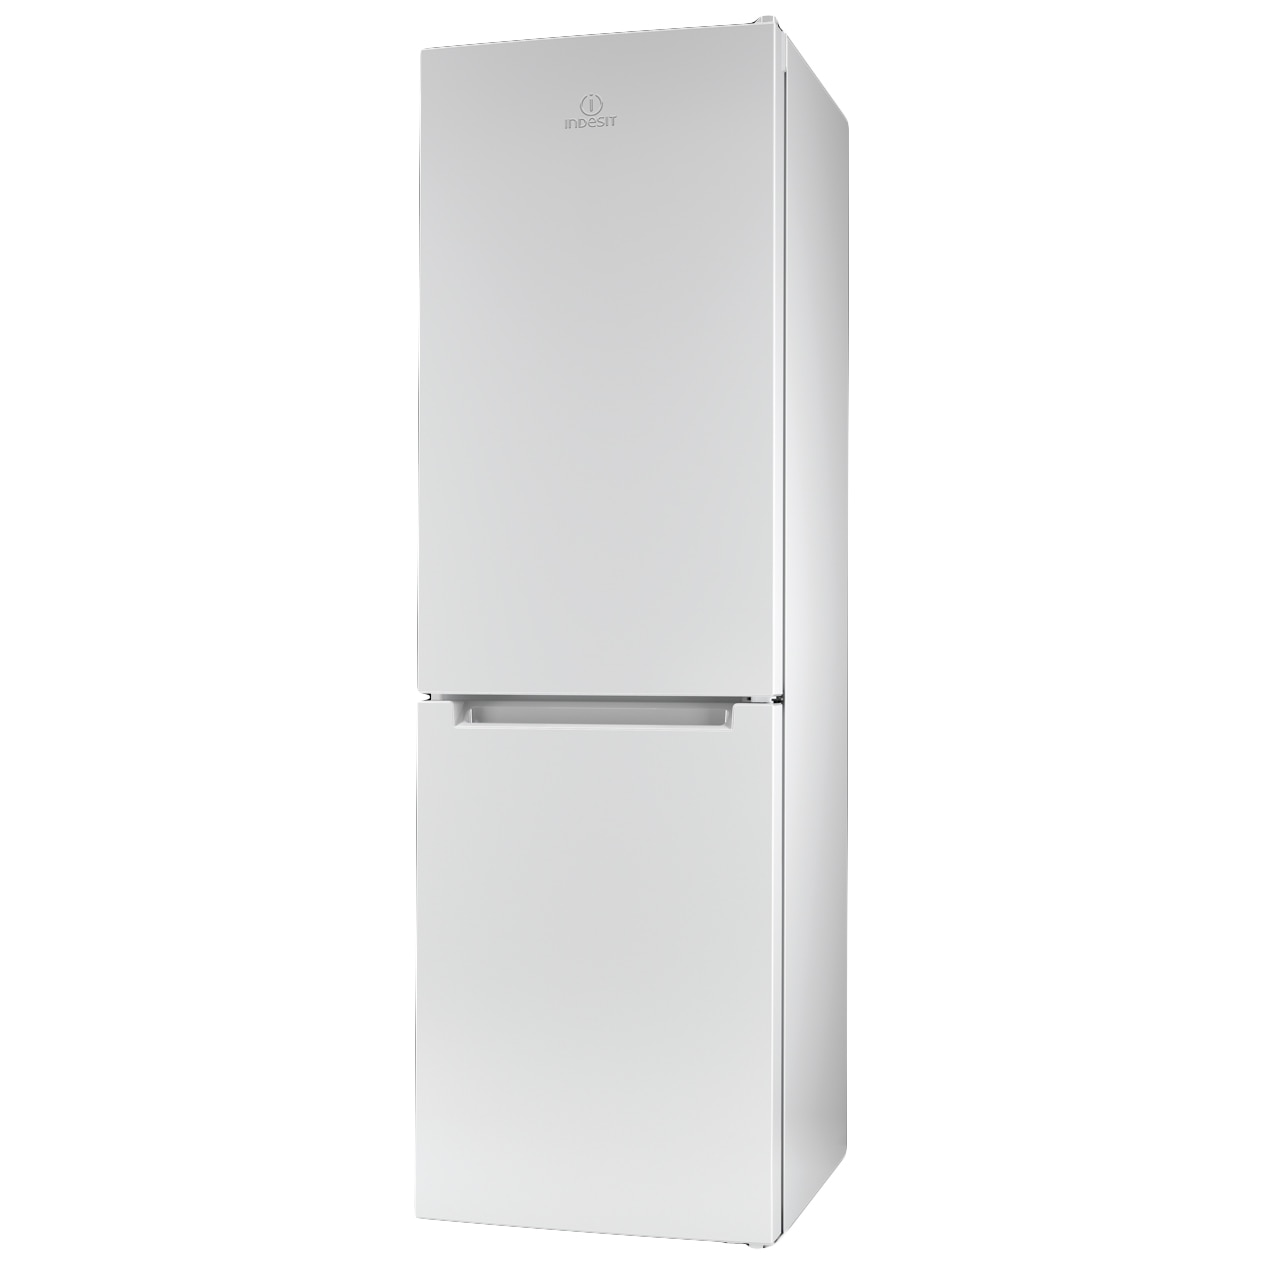 Хладилник Indesit LI8 FF2I W с обем от 305 л.